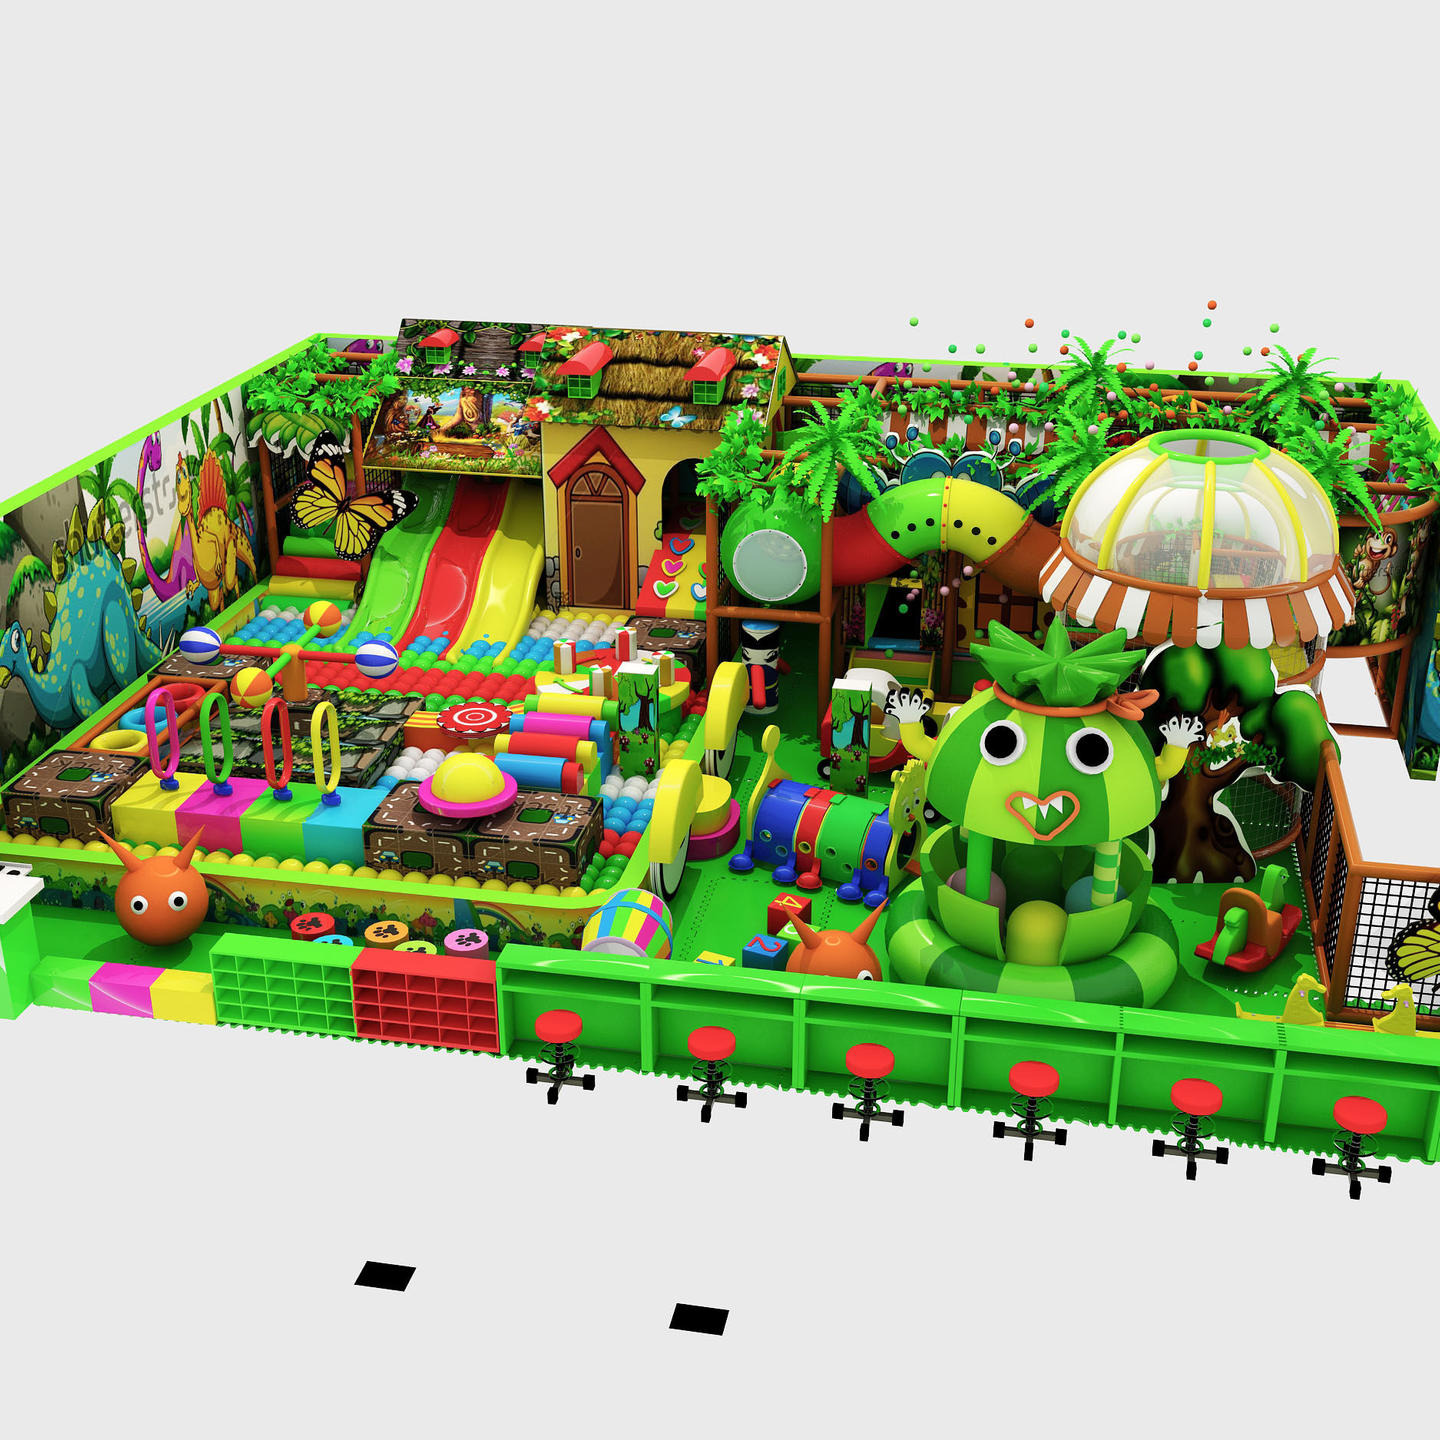 森林淘气堡儿童设施室内大型儿童娱乐设备 淘气堡儿童乐园 游乐场